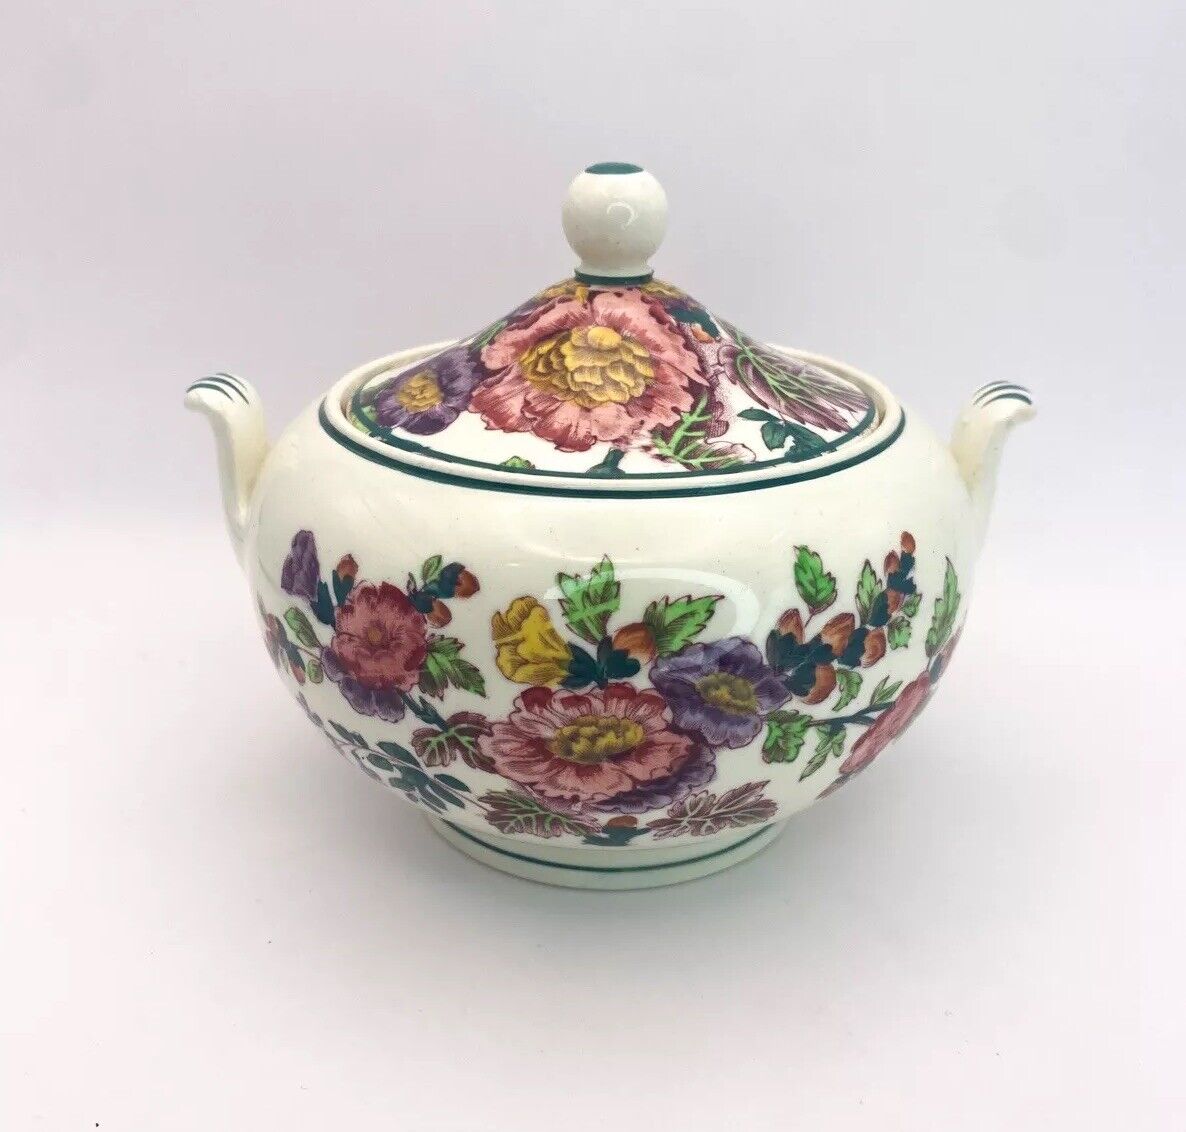 Antique Wedgwood Etruria Sugar Bowl 1898 Floral Tea Set English England Rare